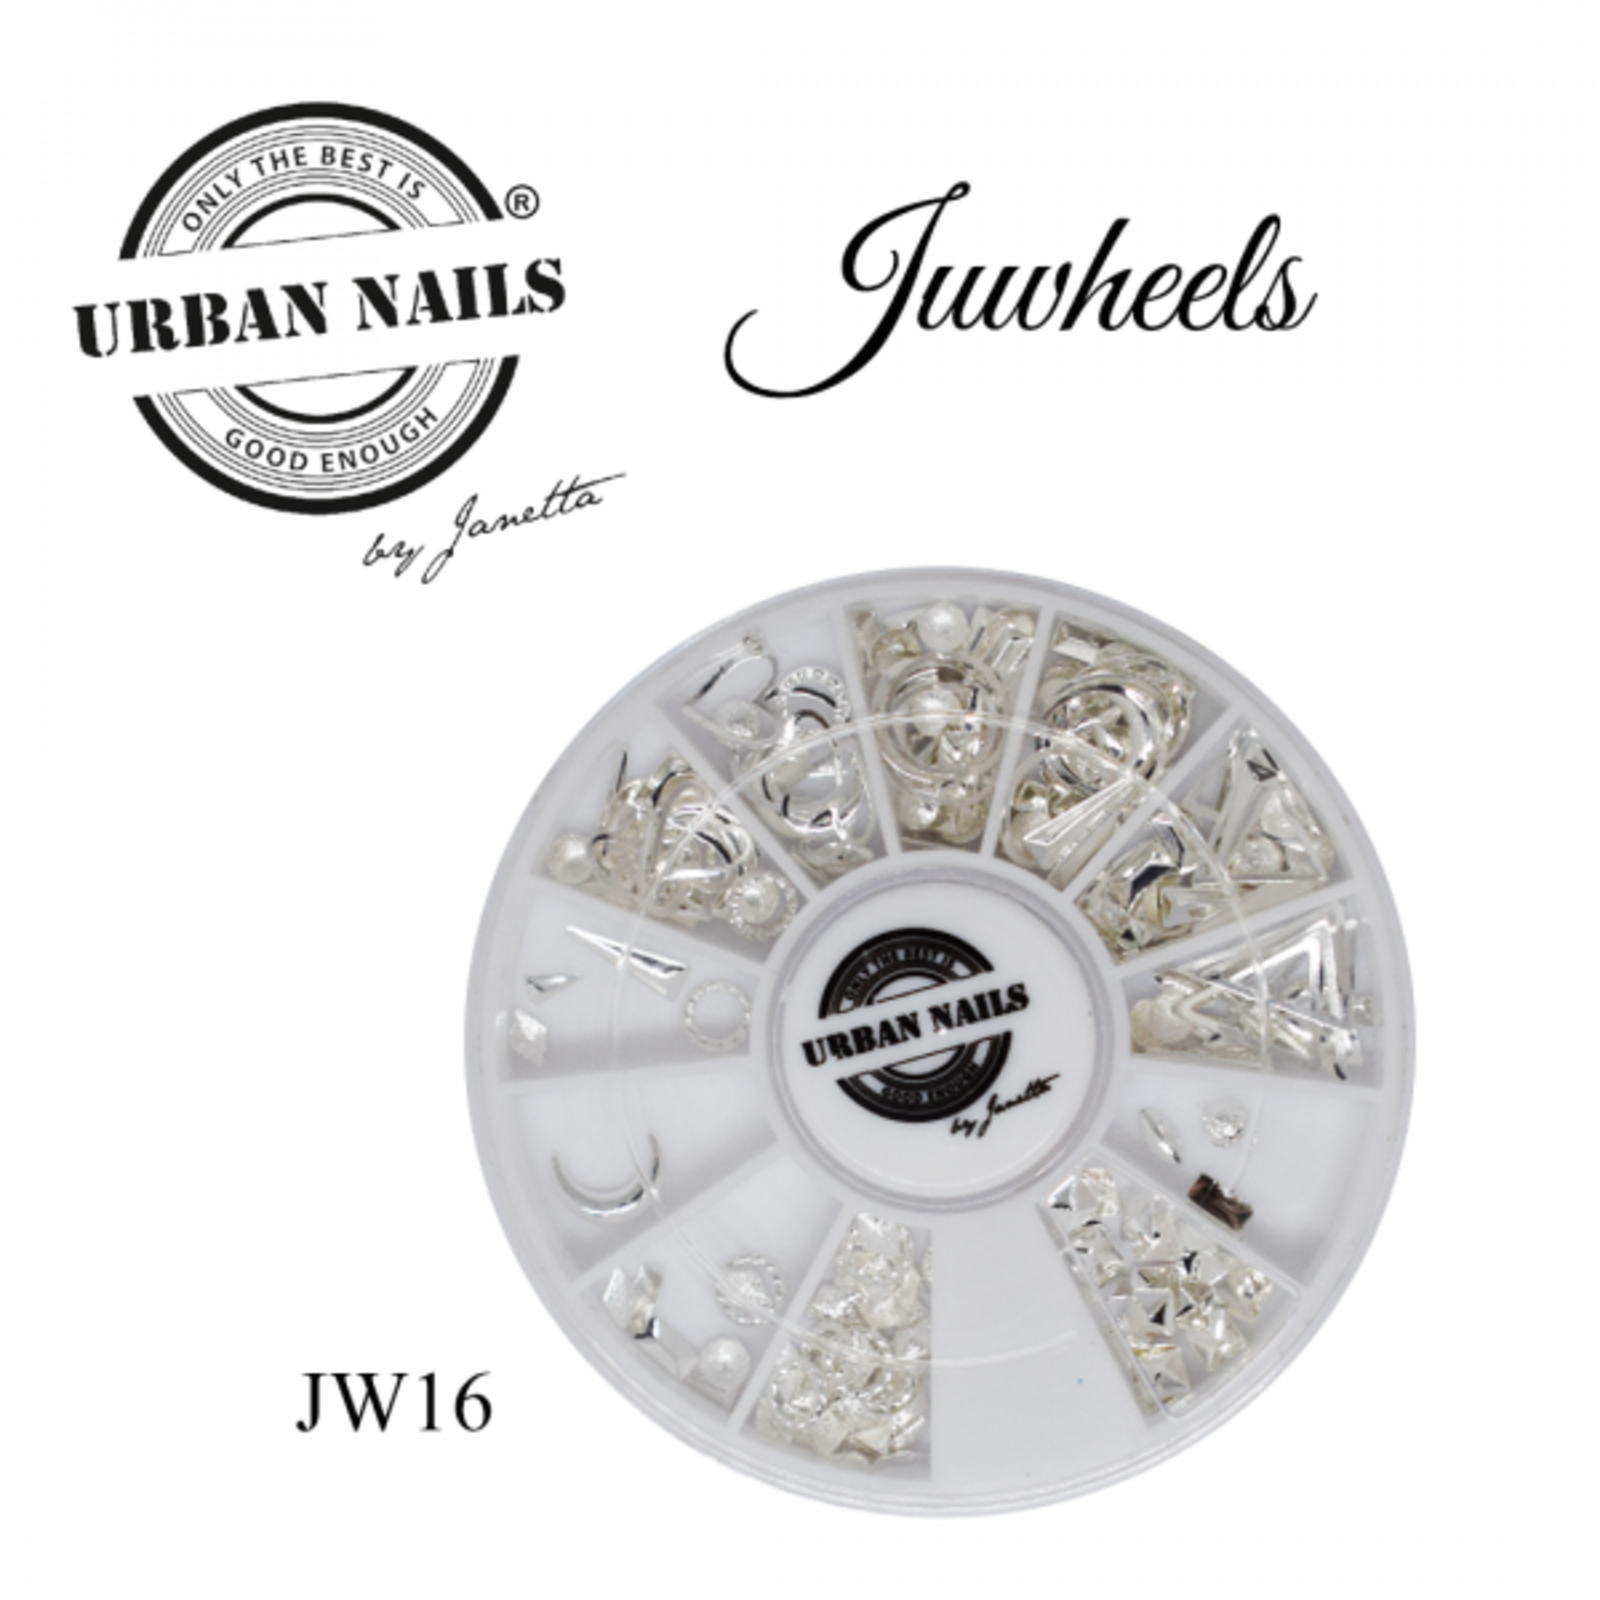 Urban nails Juwheel 16